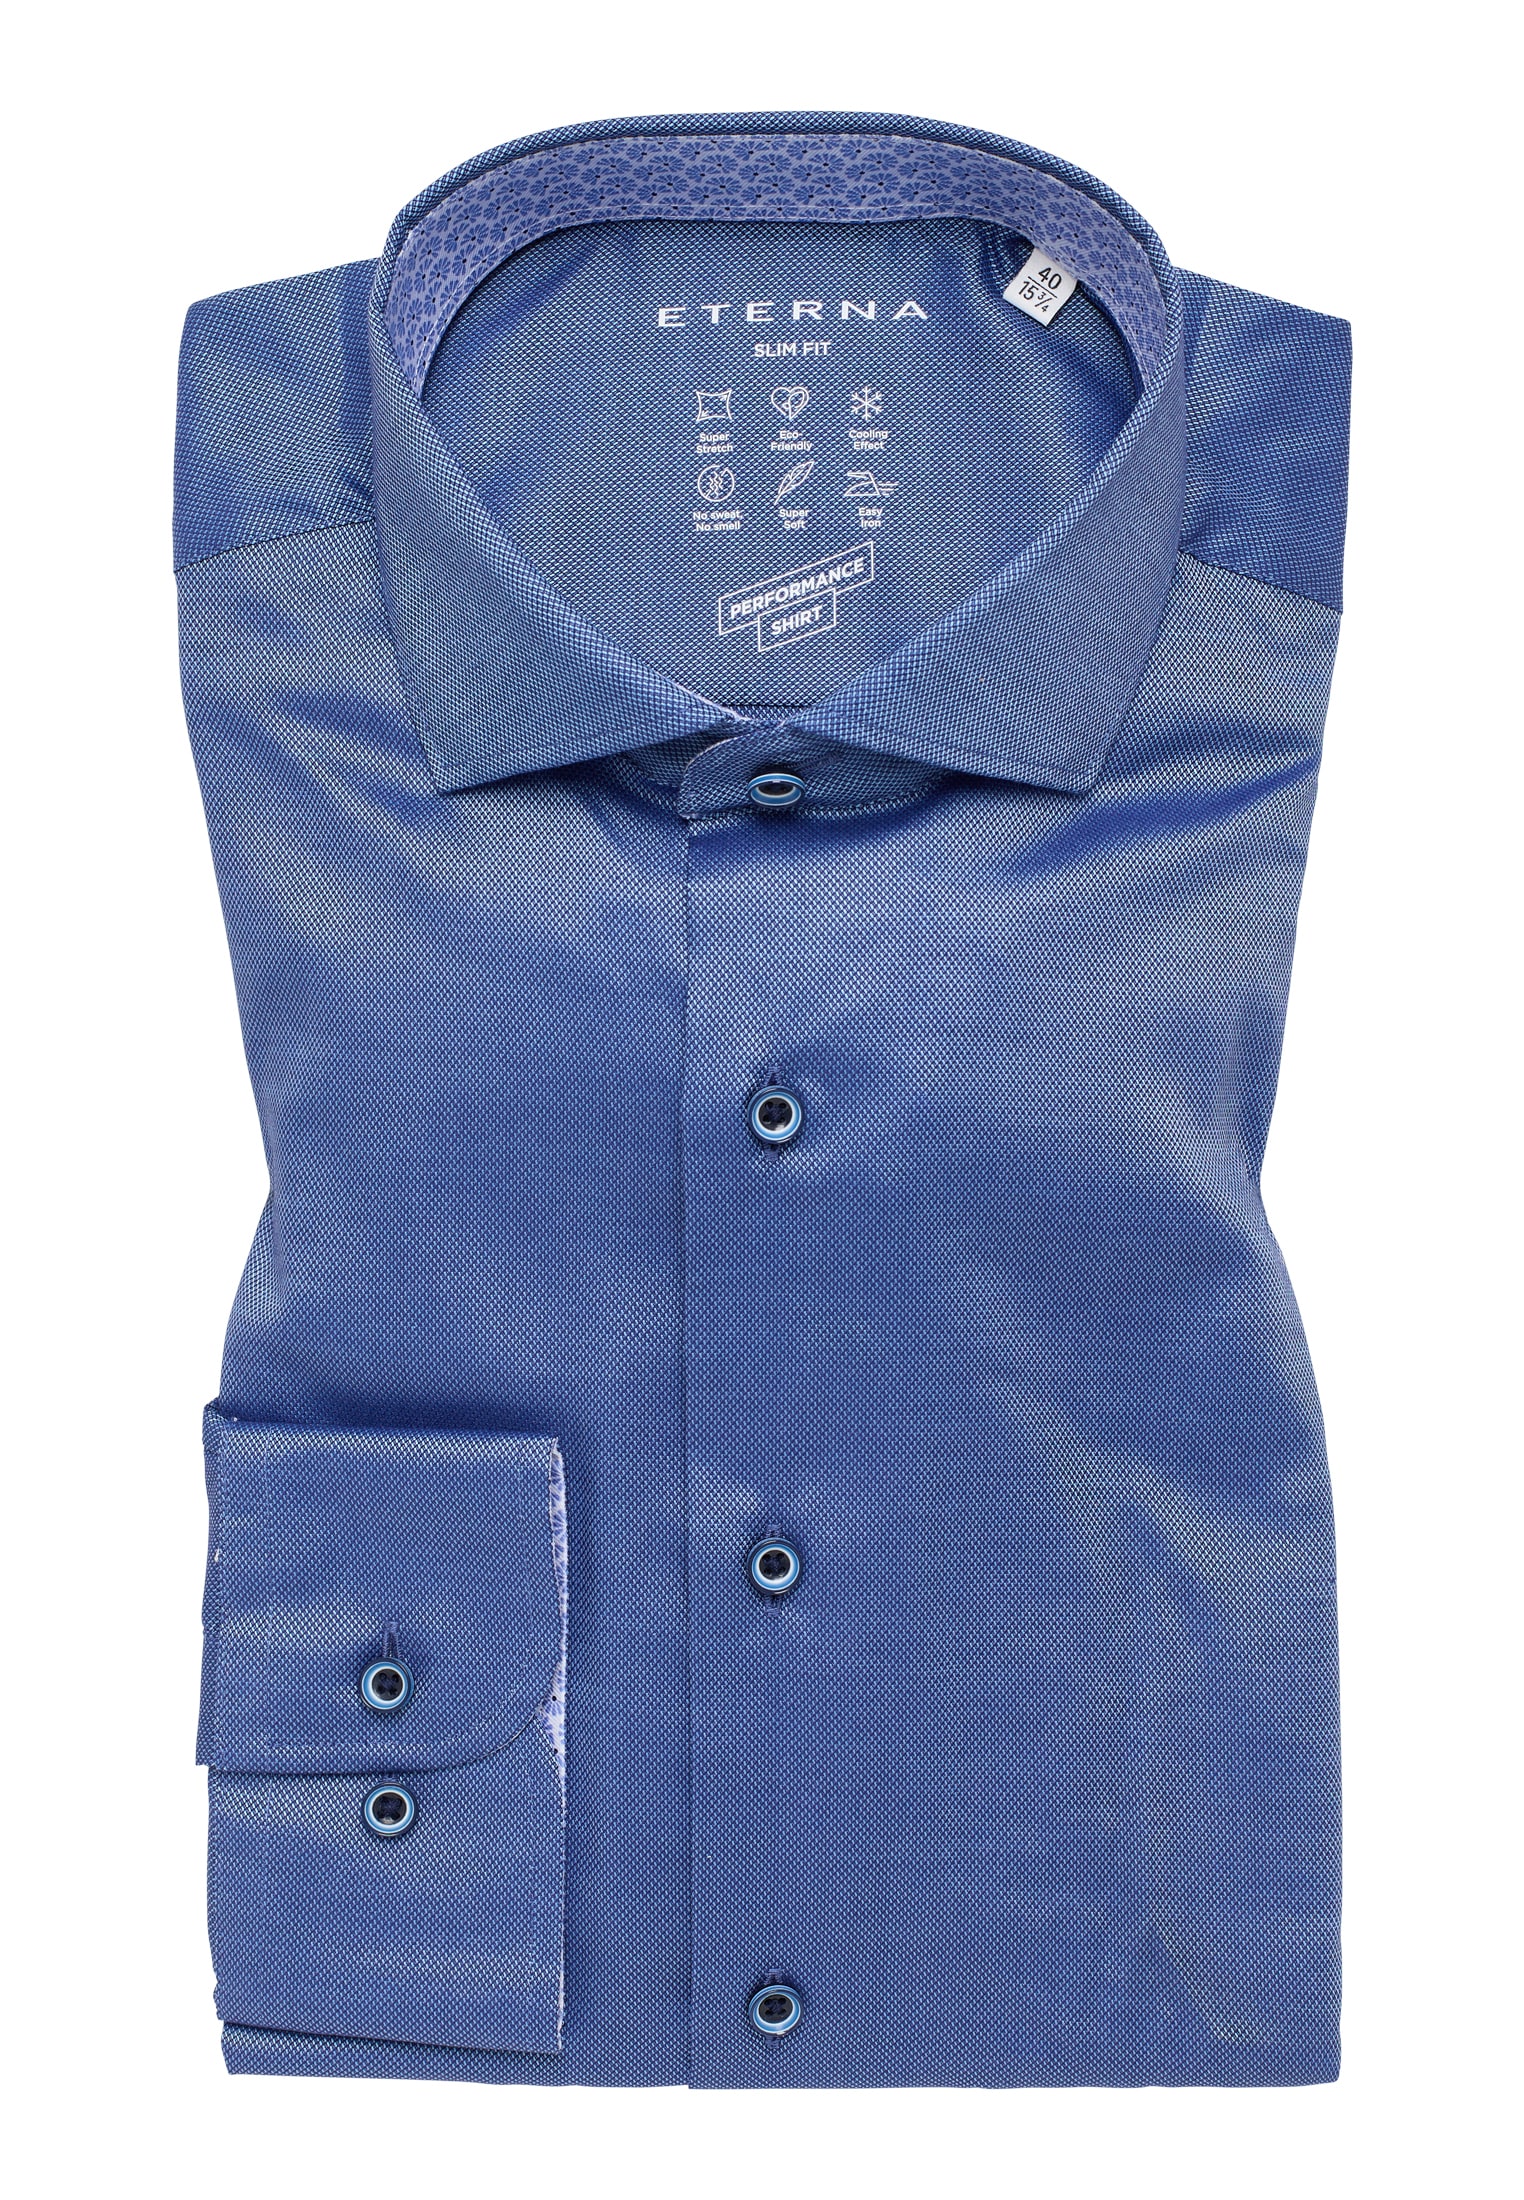 blau | | 41 1SH12542-01-41-41-1/1 blau Shirt | Langarm Performance | in SLIM strukturiert FIT